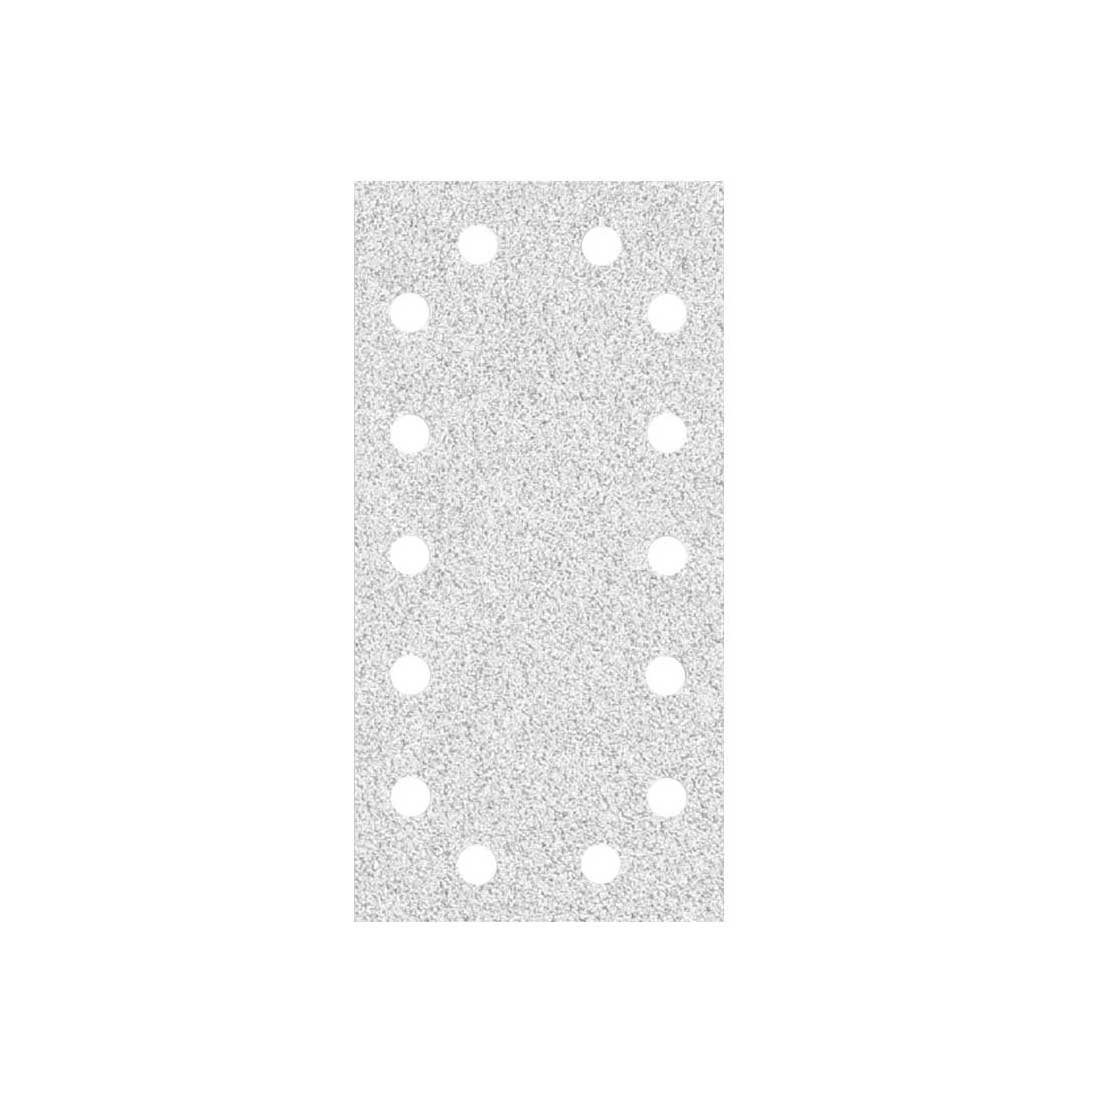 MioTools Schleifpapier 230 x 115 mm 14-Loch Klett-Schleifblätter für Schwingschleifer, Normalkorund, 50 Stk., K150